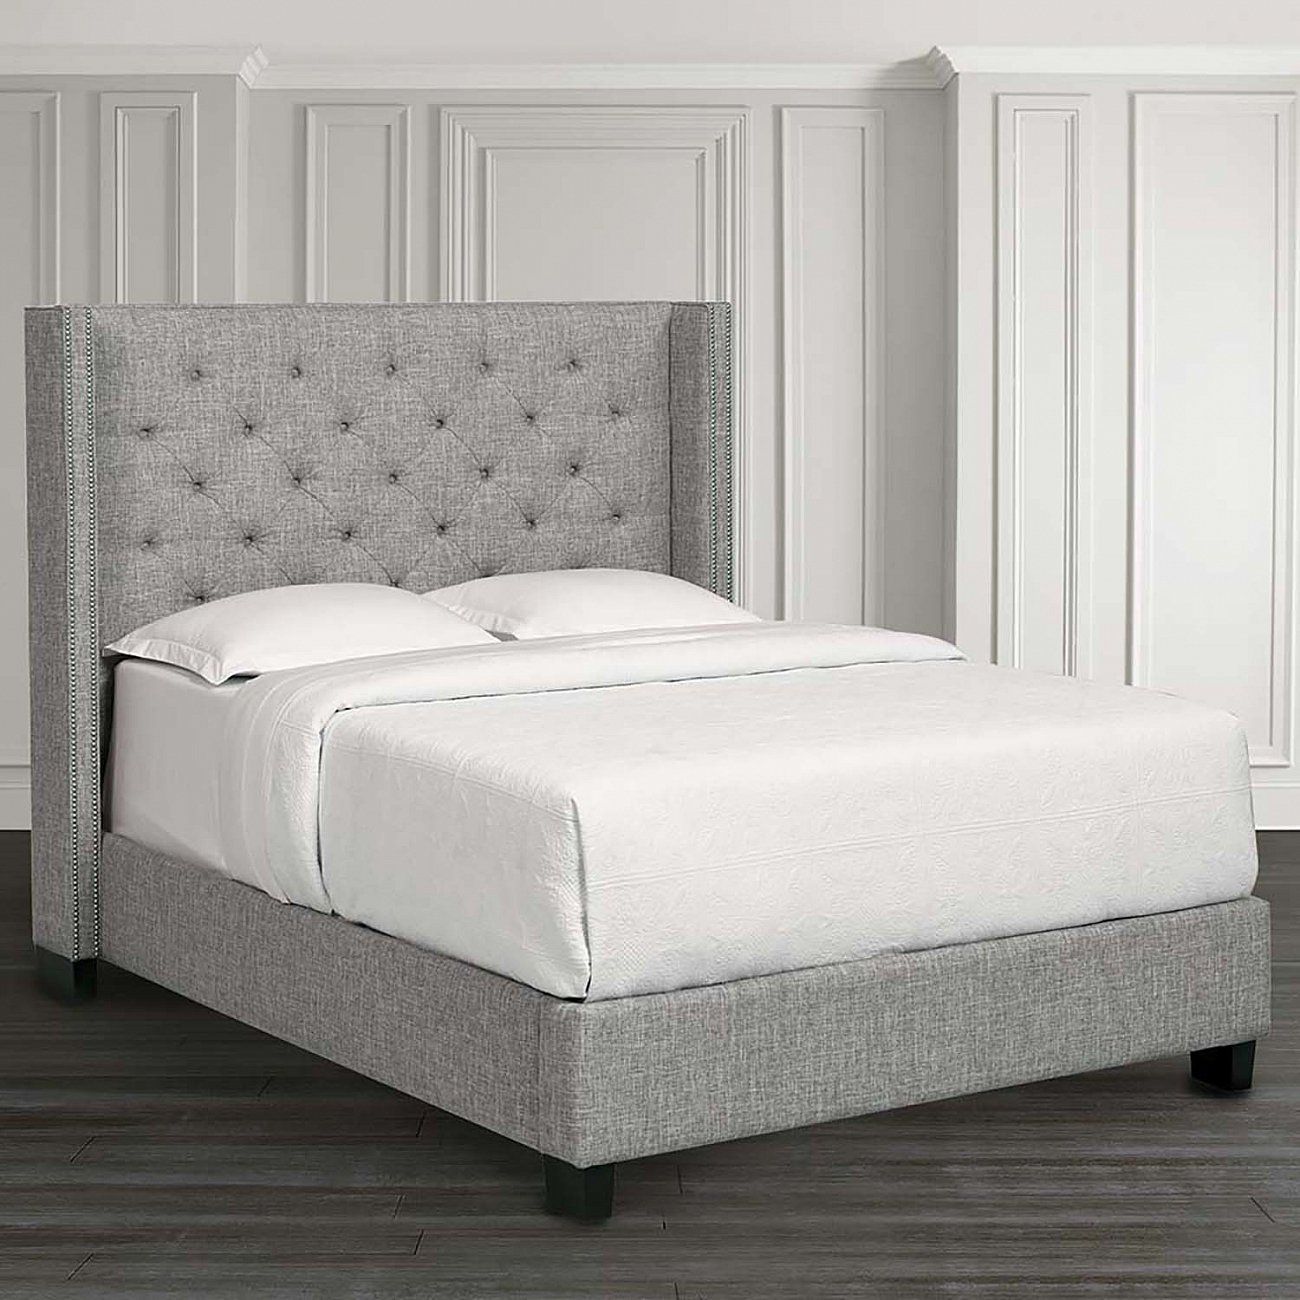 Кровать двуспальная с мягким изголовьем 160х200 см кремовая Wing